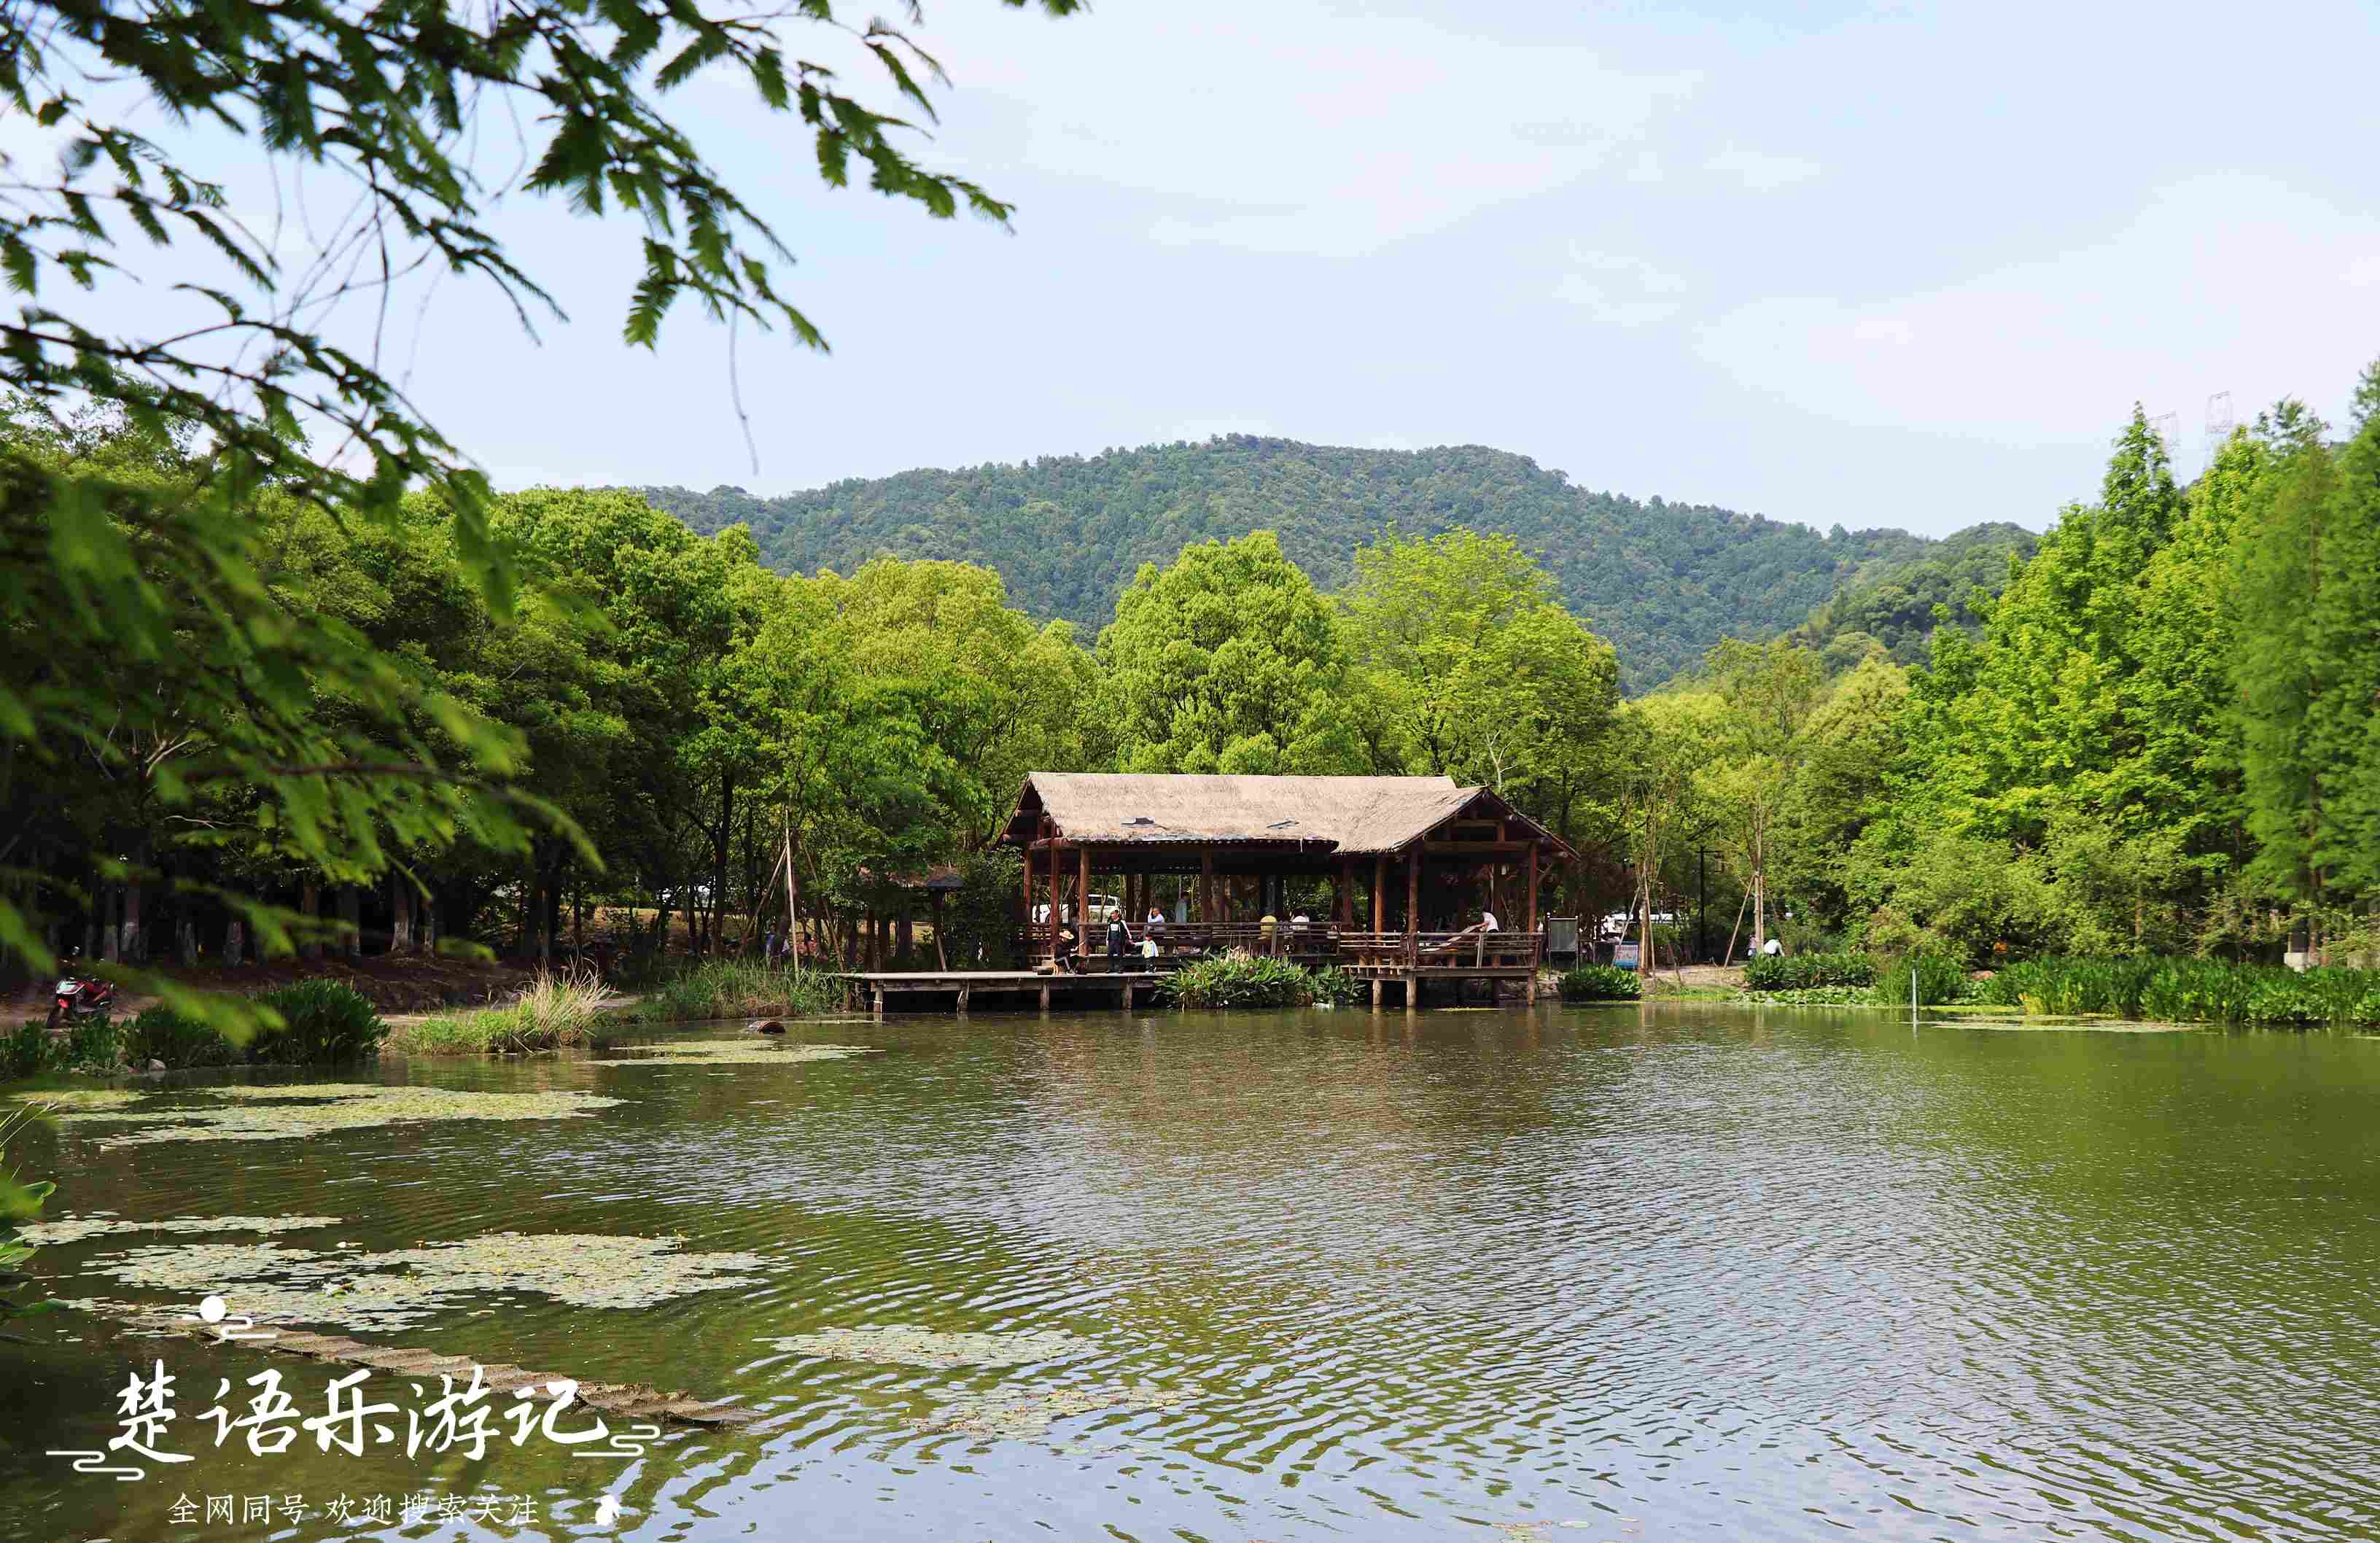 宁波浮碧山下的人工湖，由休闲胜地变成露营胜地，景美却免费开放